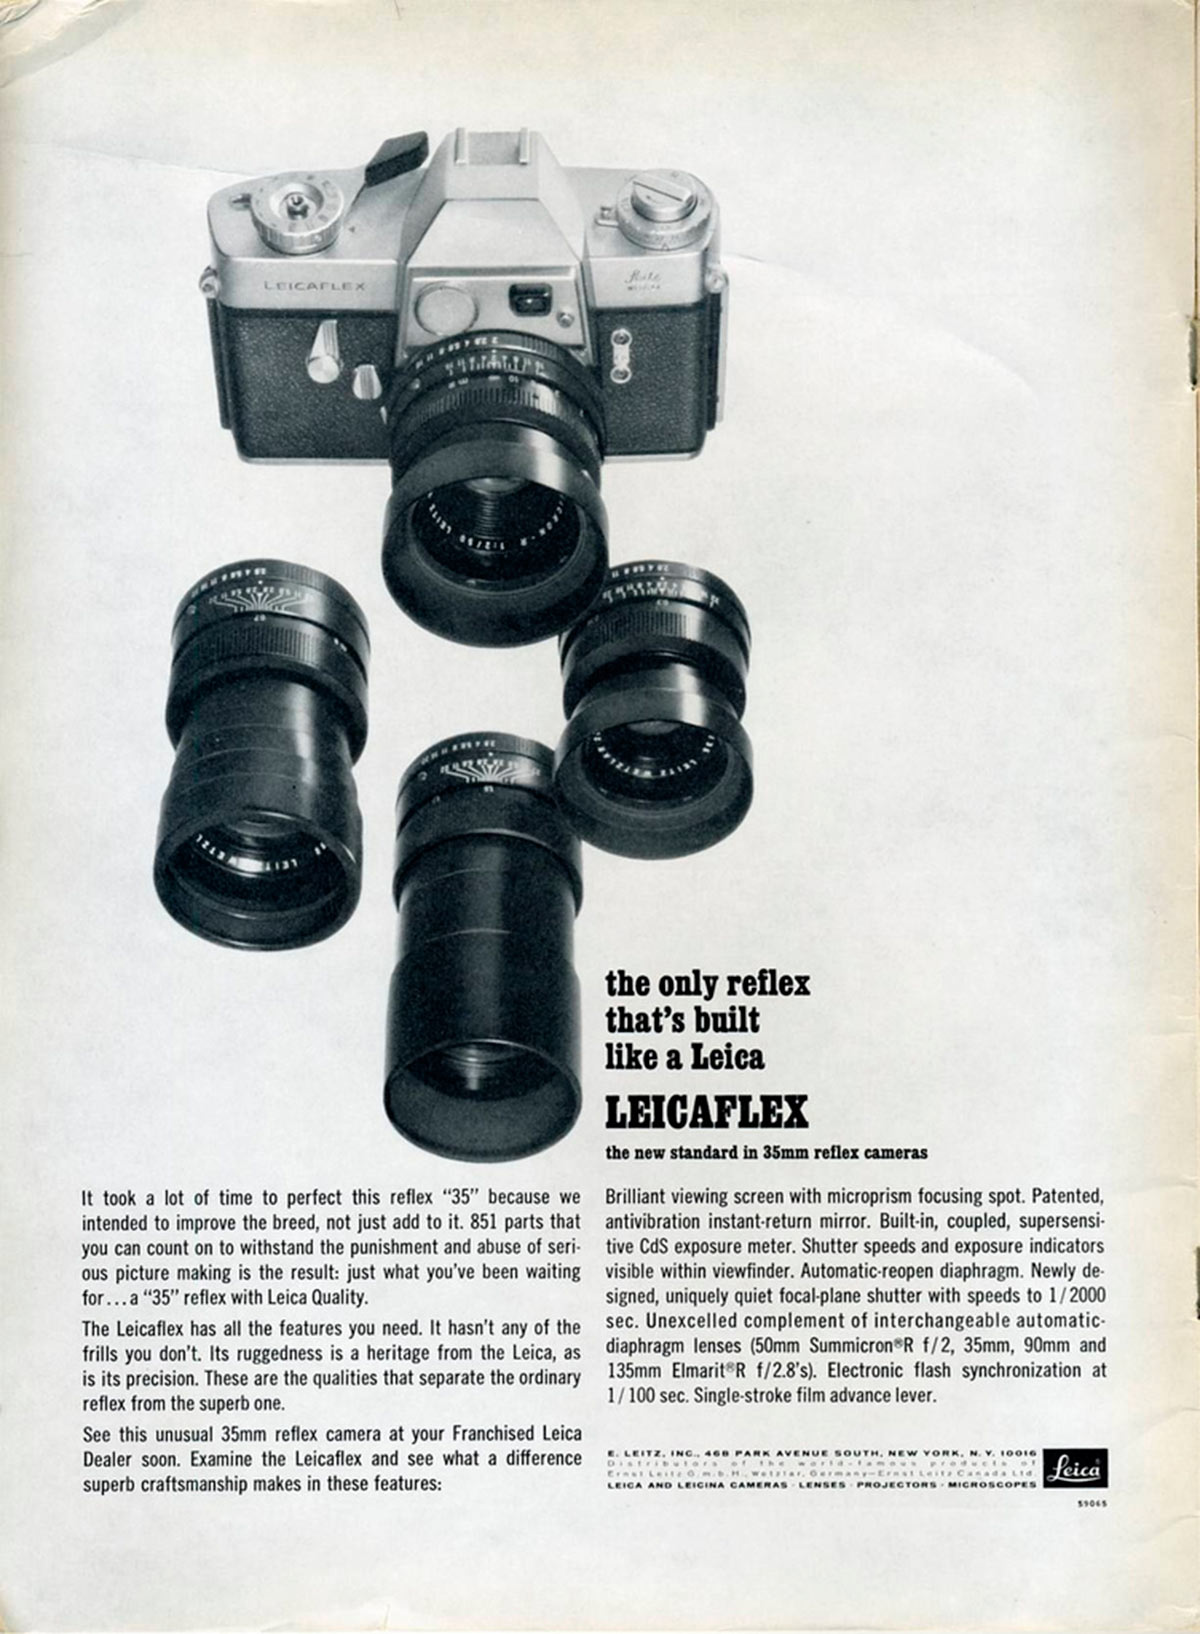 Publicidad de Leicaflex, 1965. Por Nesster